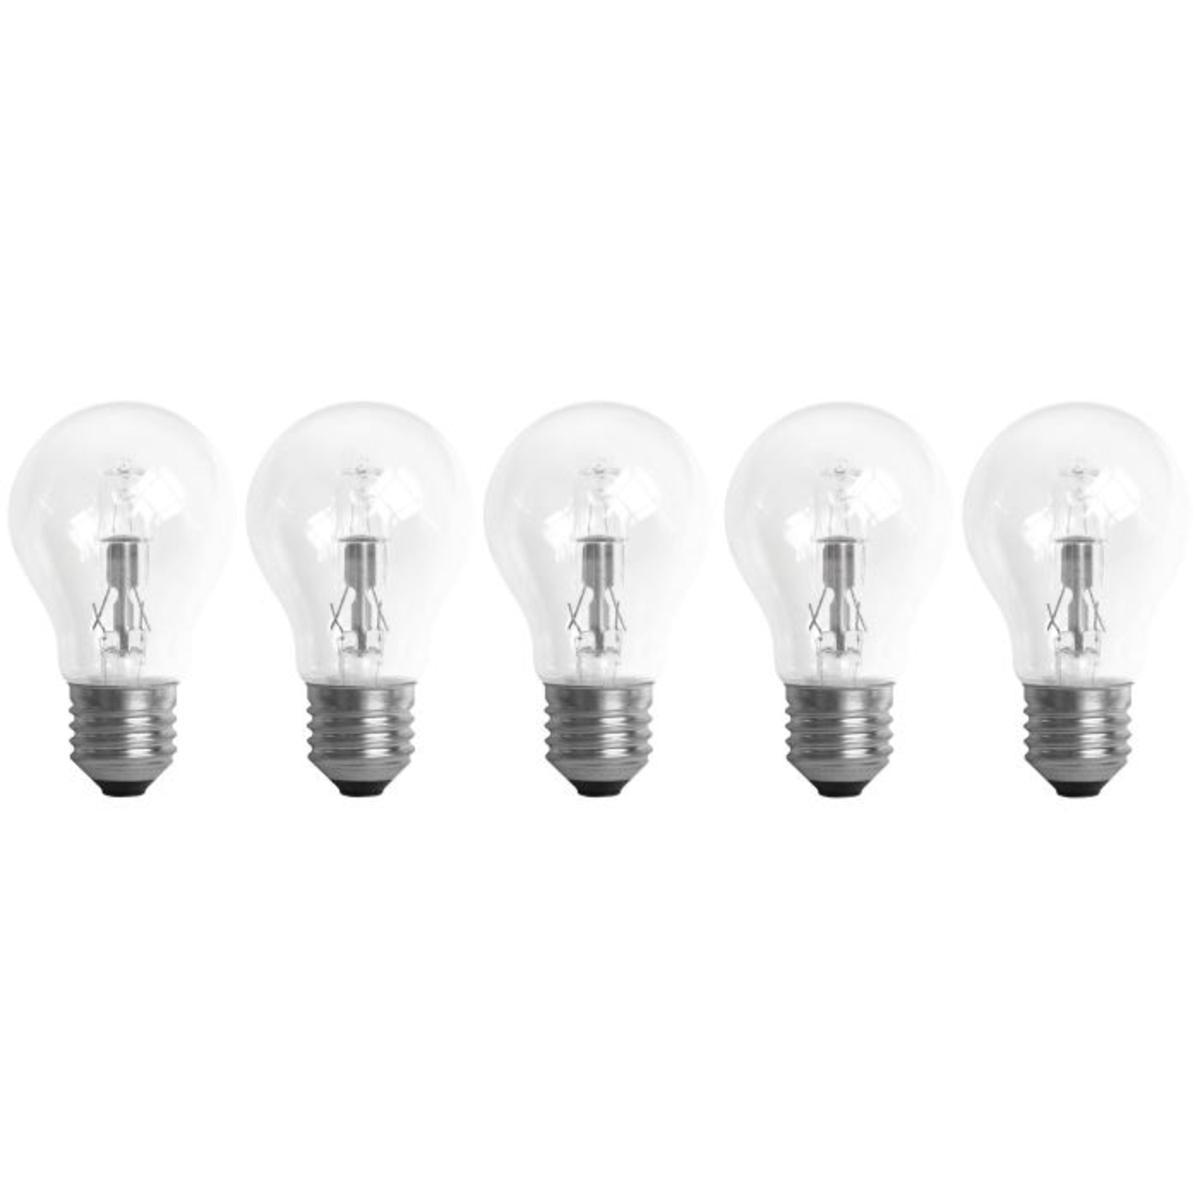 5 ampoules halogènes E27 - Transparent